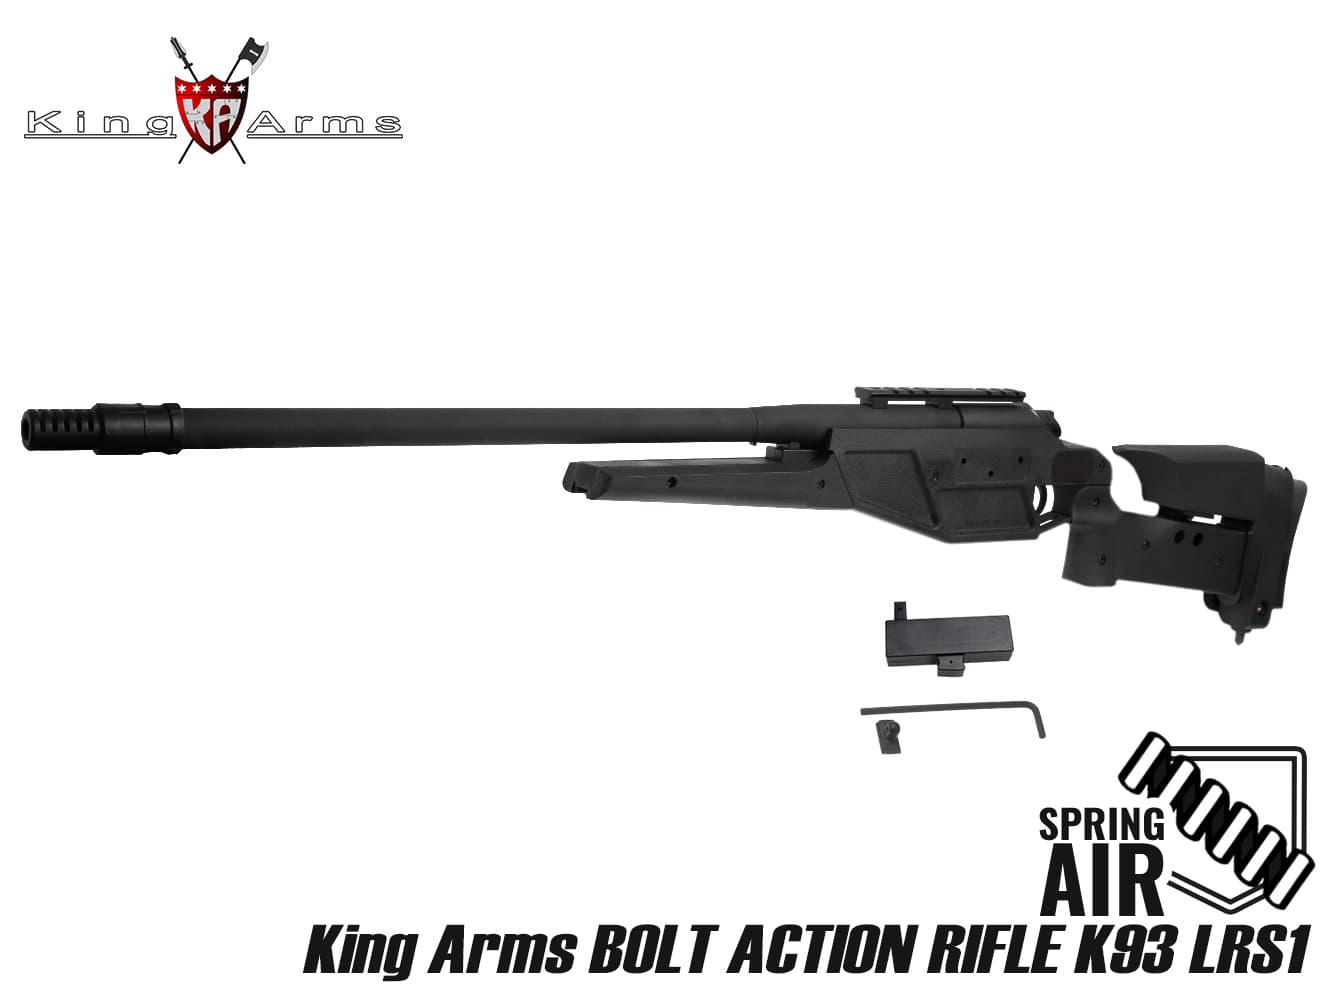 King Arms ボルトアクションライフル K93 LRS1 ウルトラグレード◆スナイパー ライフル ストレート アクション モジューラー構造 調整式 GIPN POLICE 精度 速射